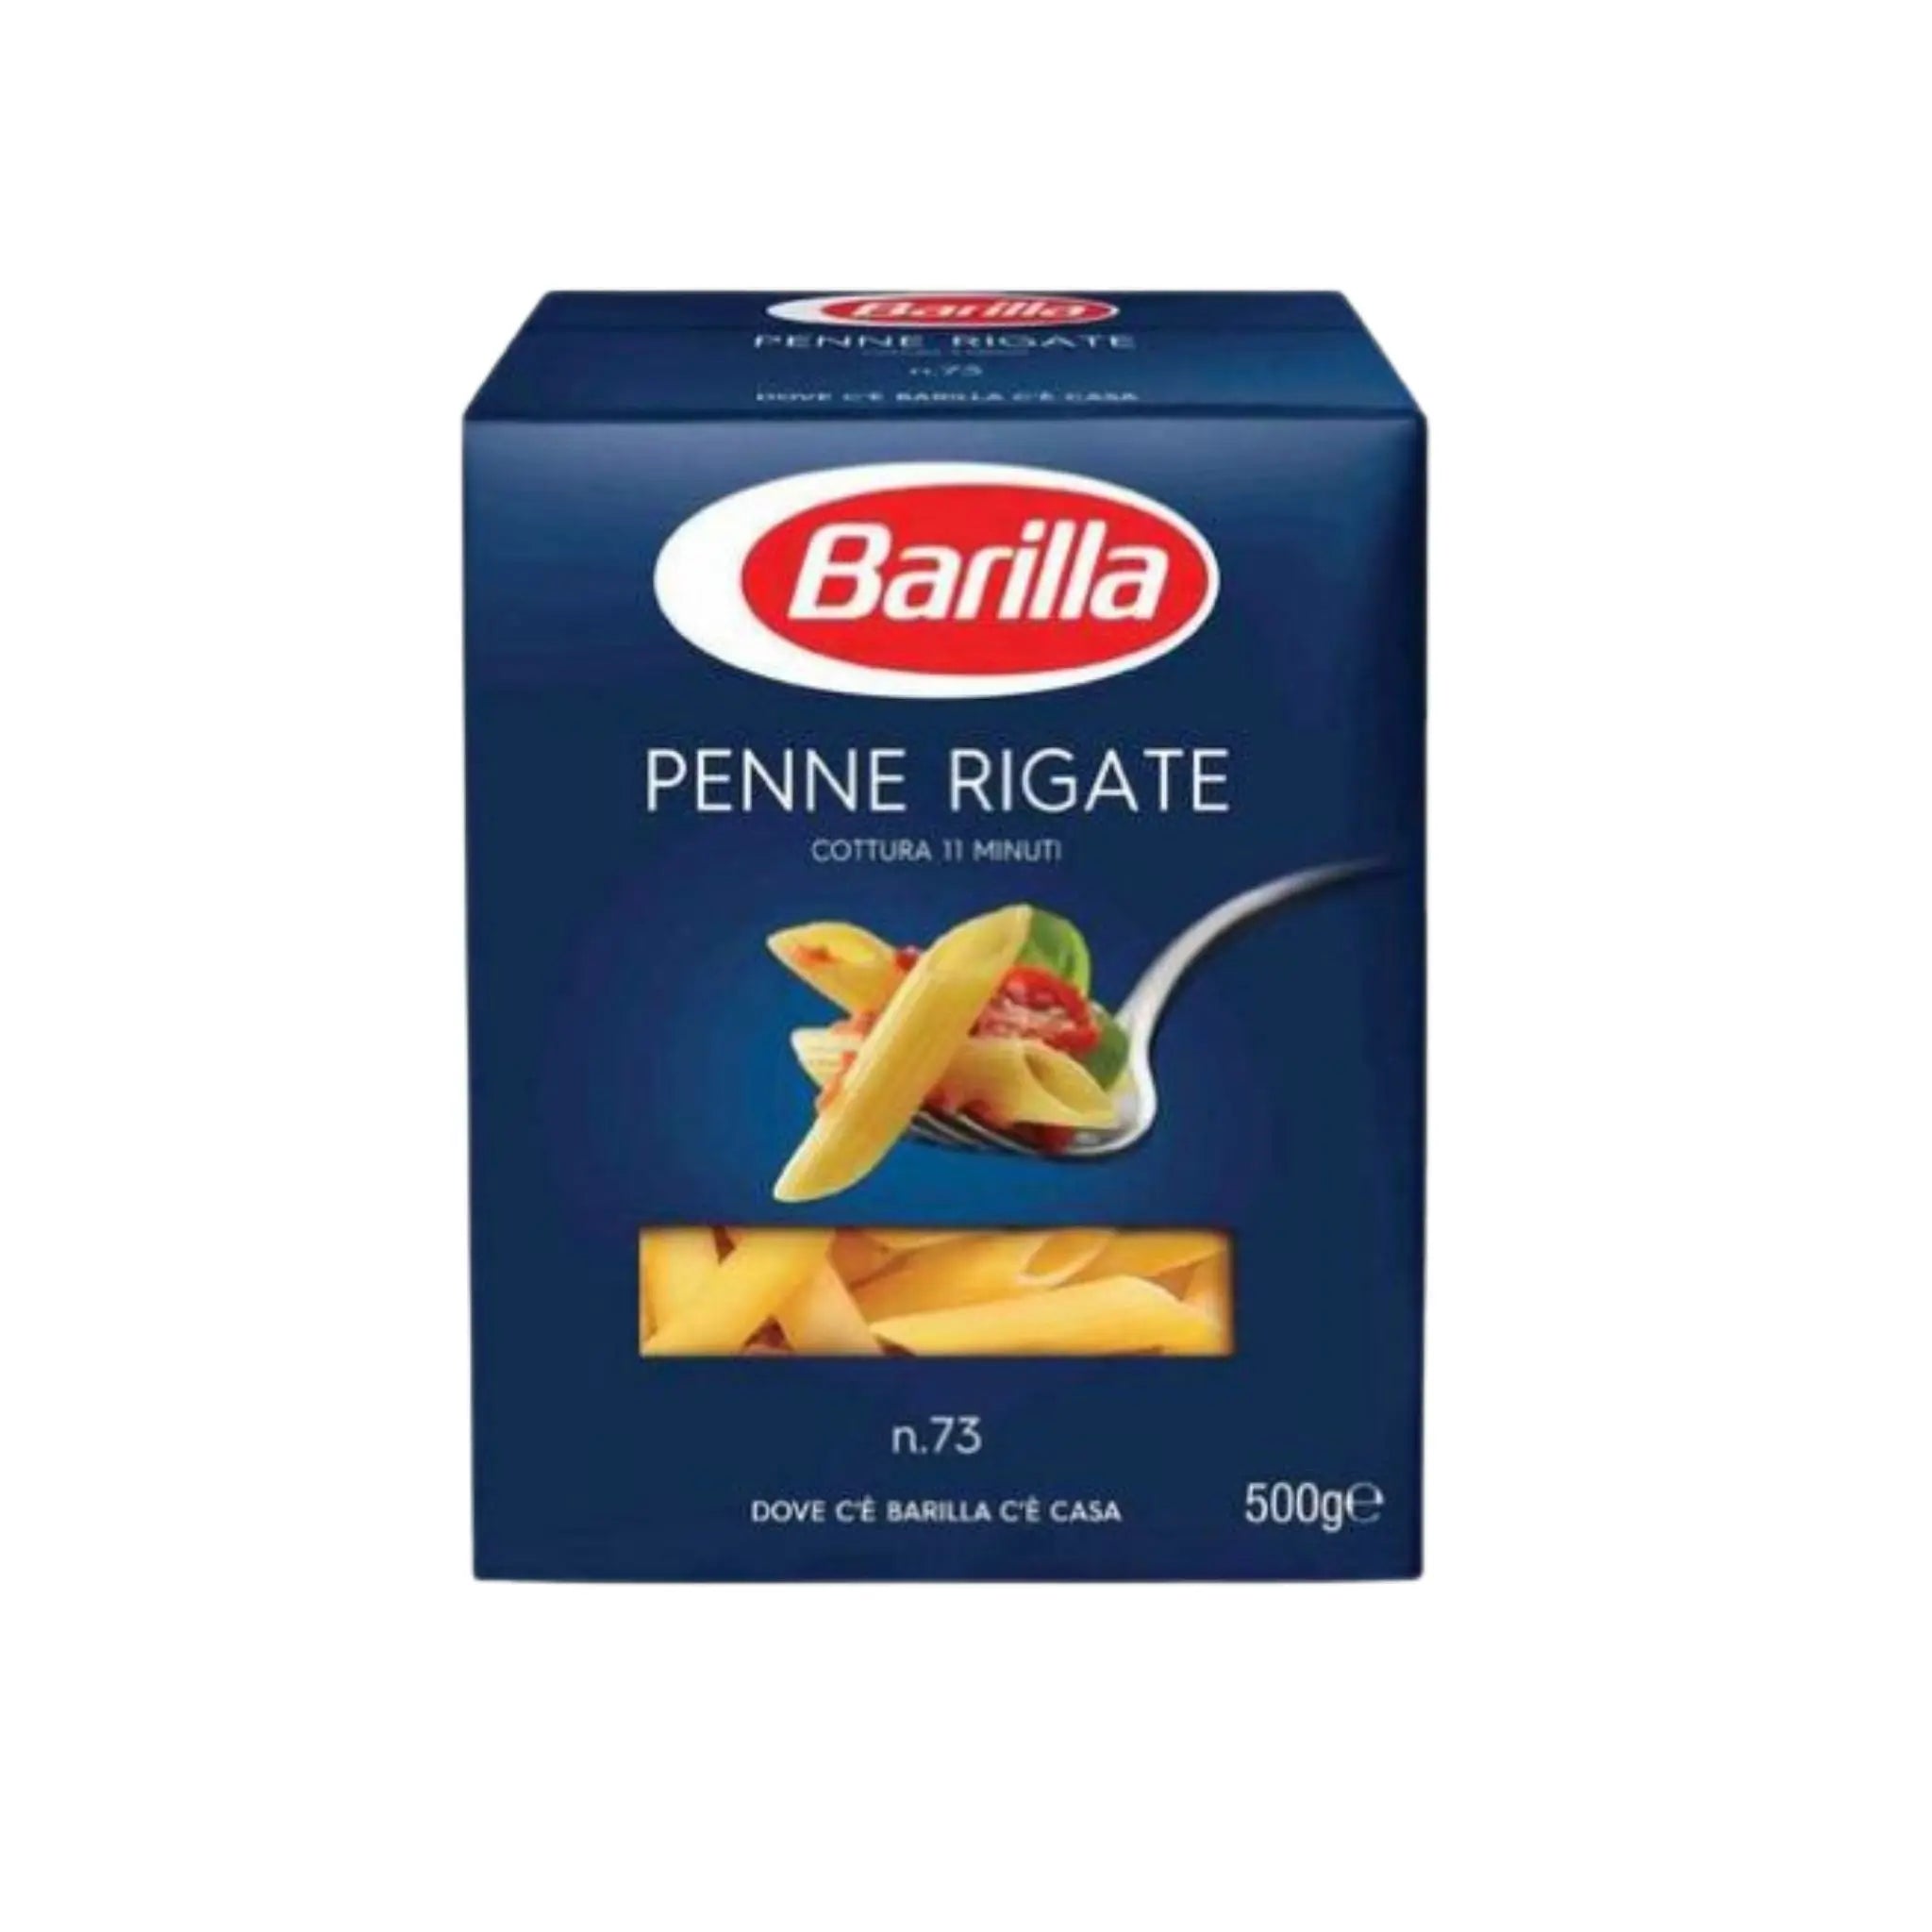 Barilla Penne Rigate Pasta - 24x500g (1 carton) - Marino.AE